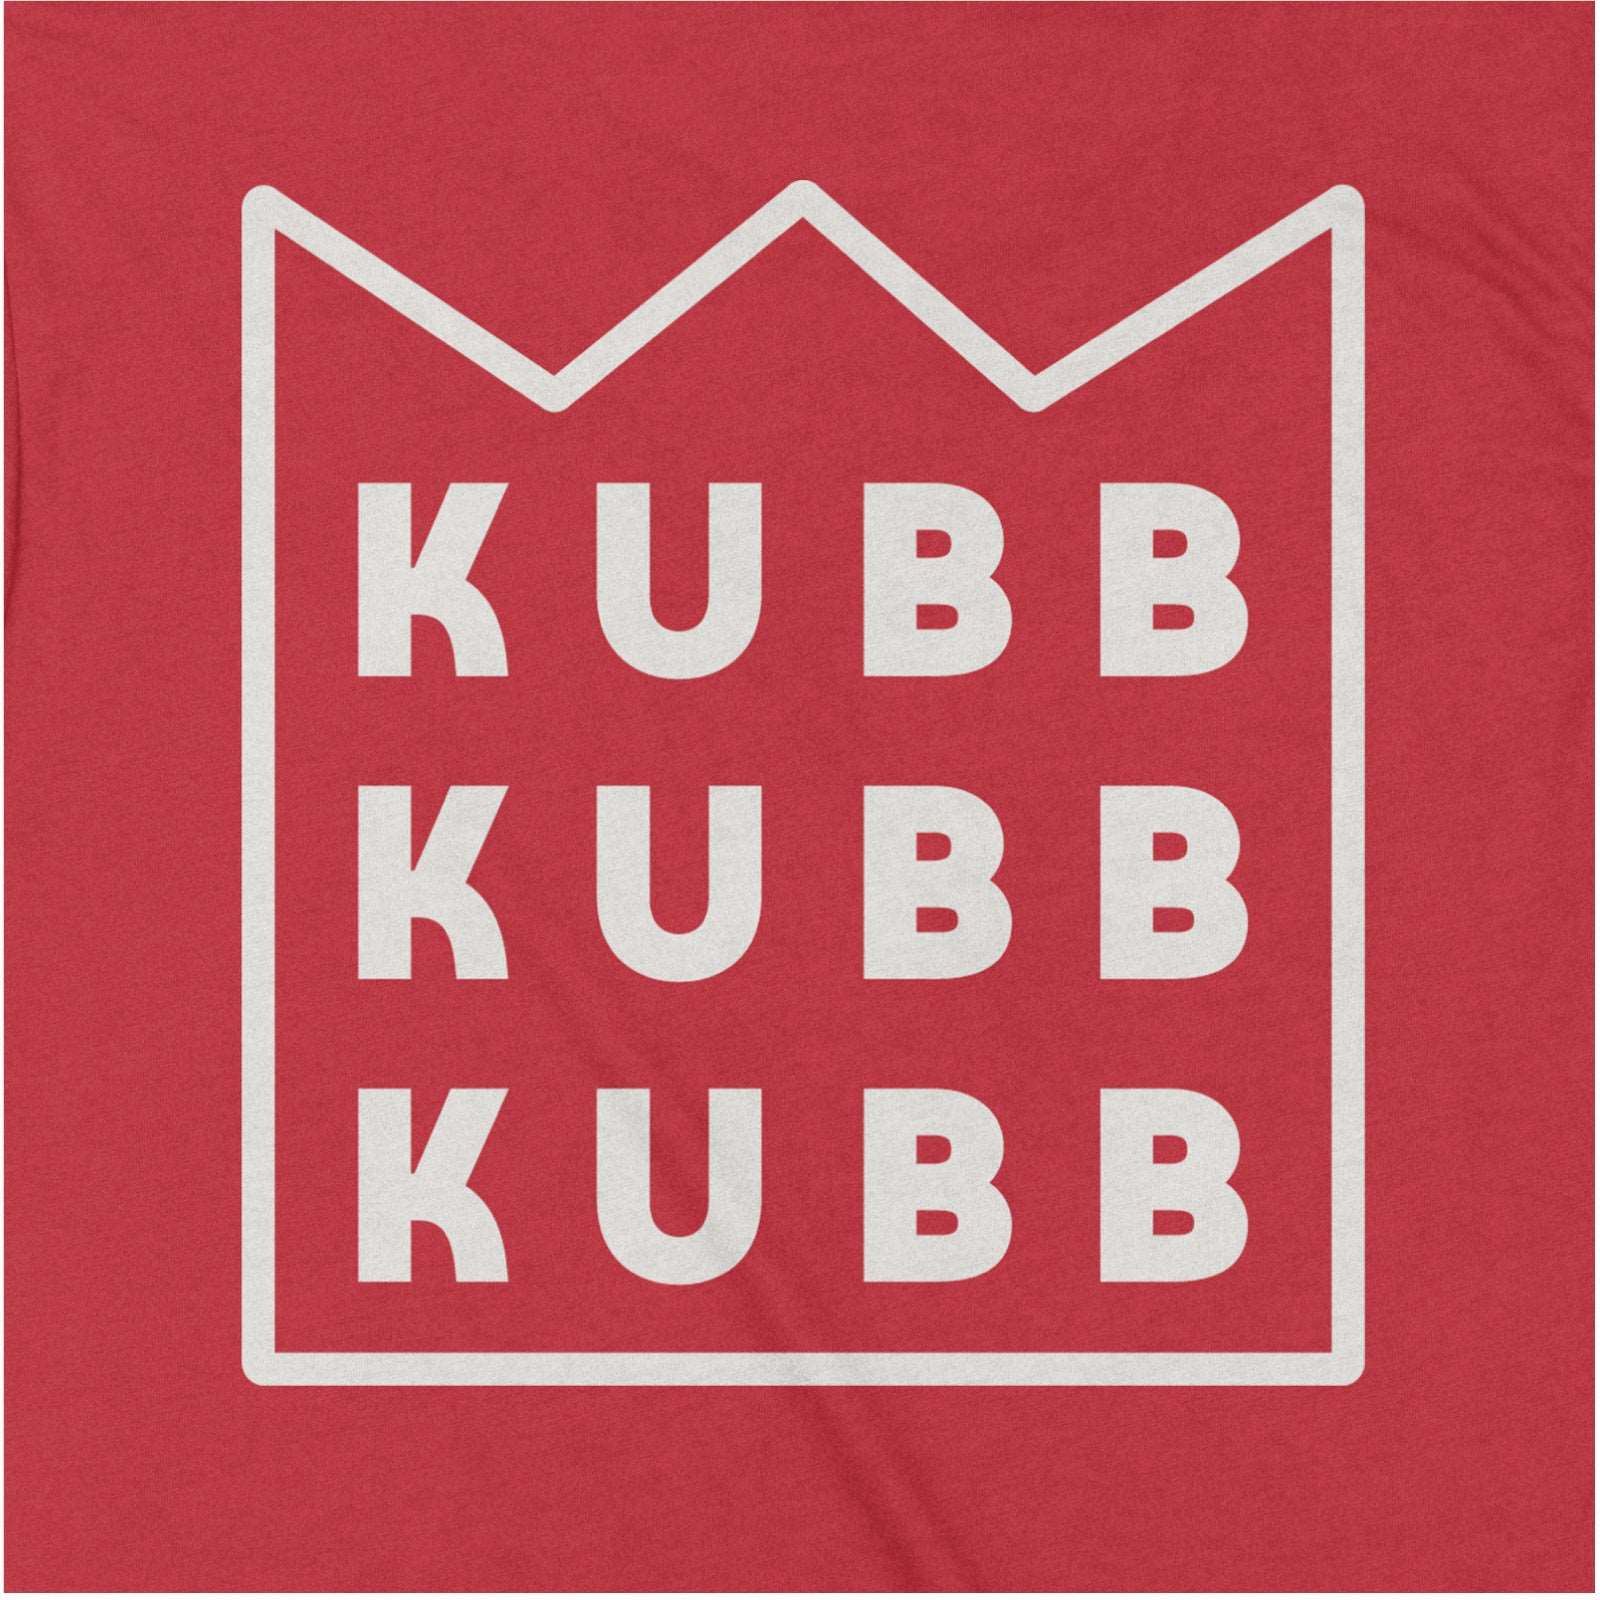 More Kubb - Country Kubb